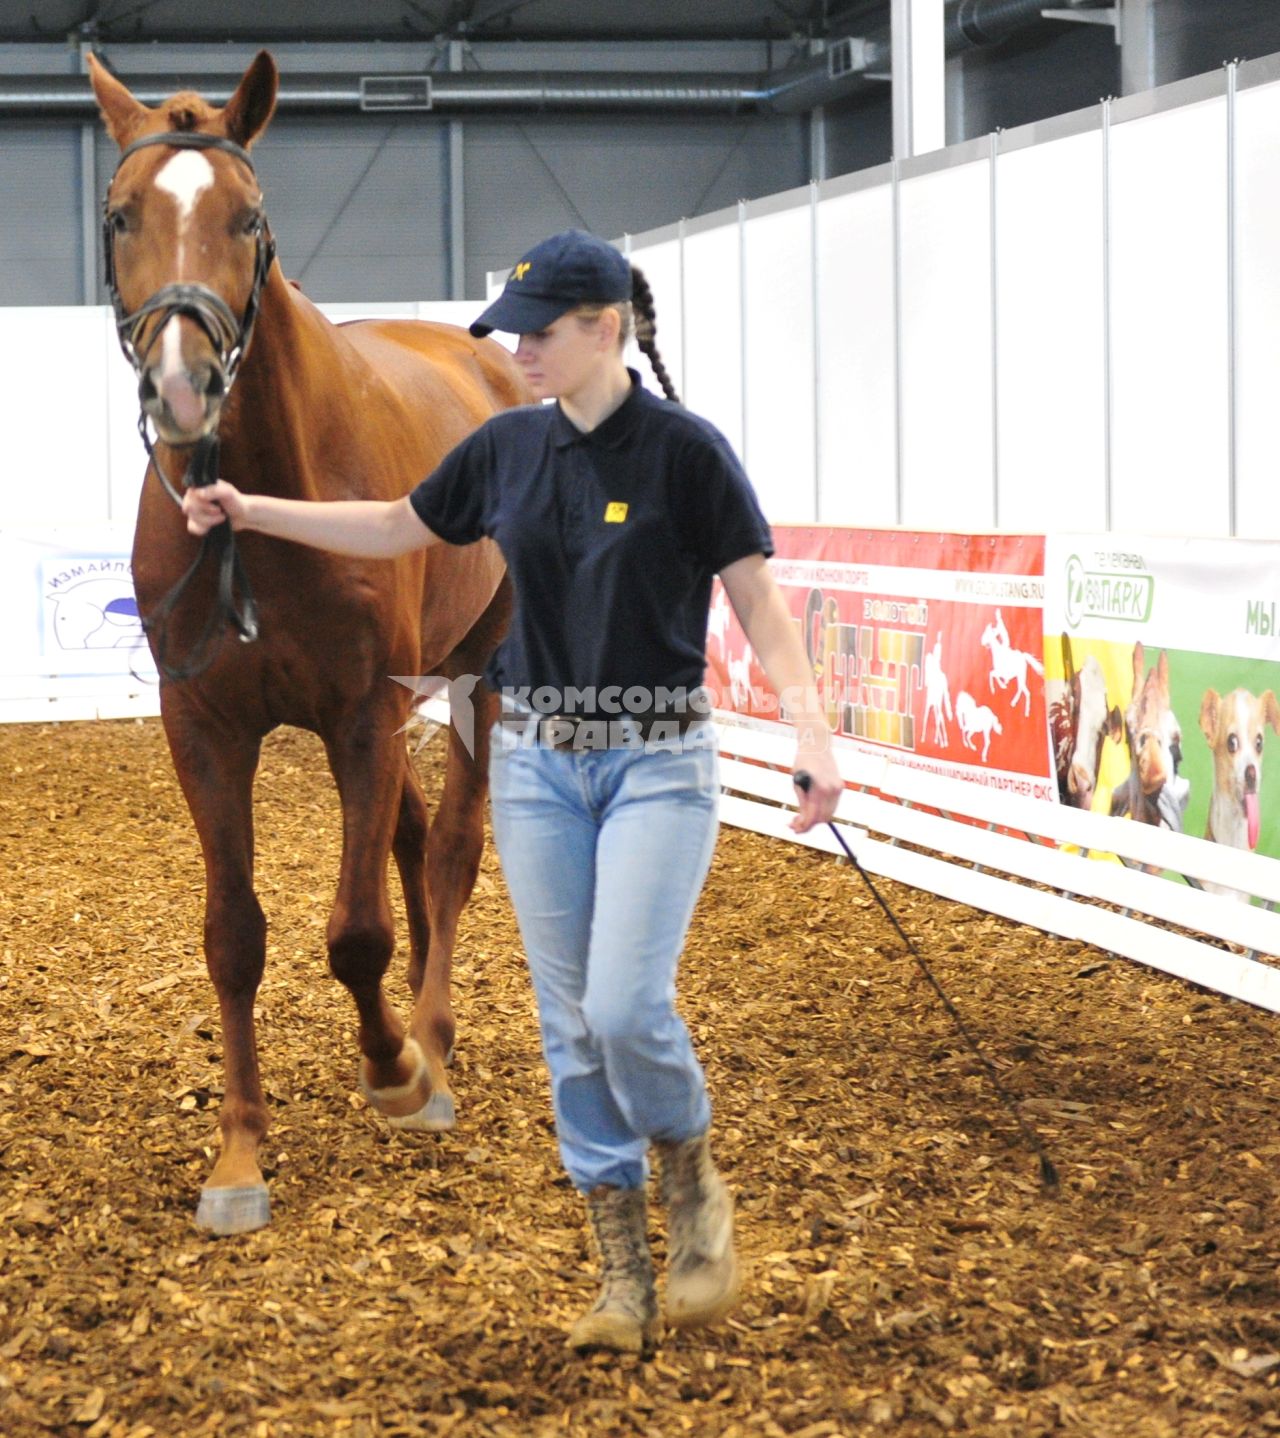 Международная конная выставка ЭКВИРОС. На снимке: девушка ведет лошадь. 5 октября 2011 года.